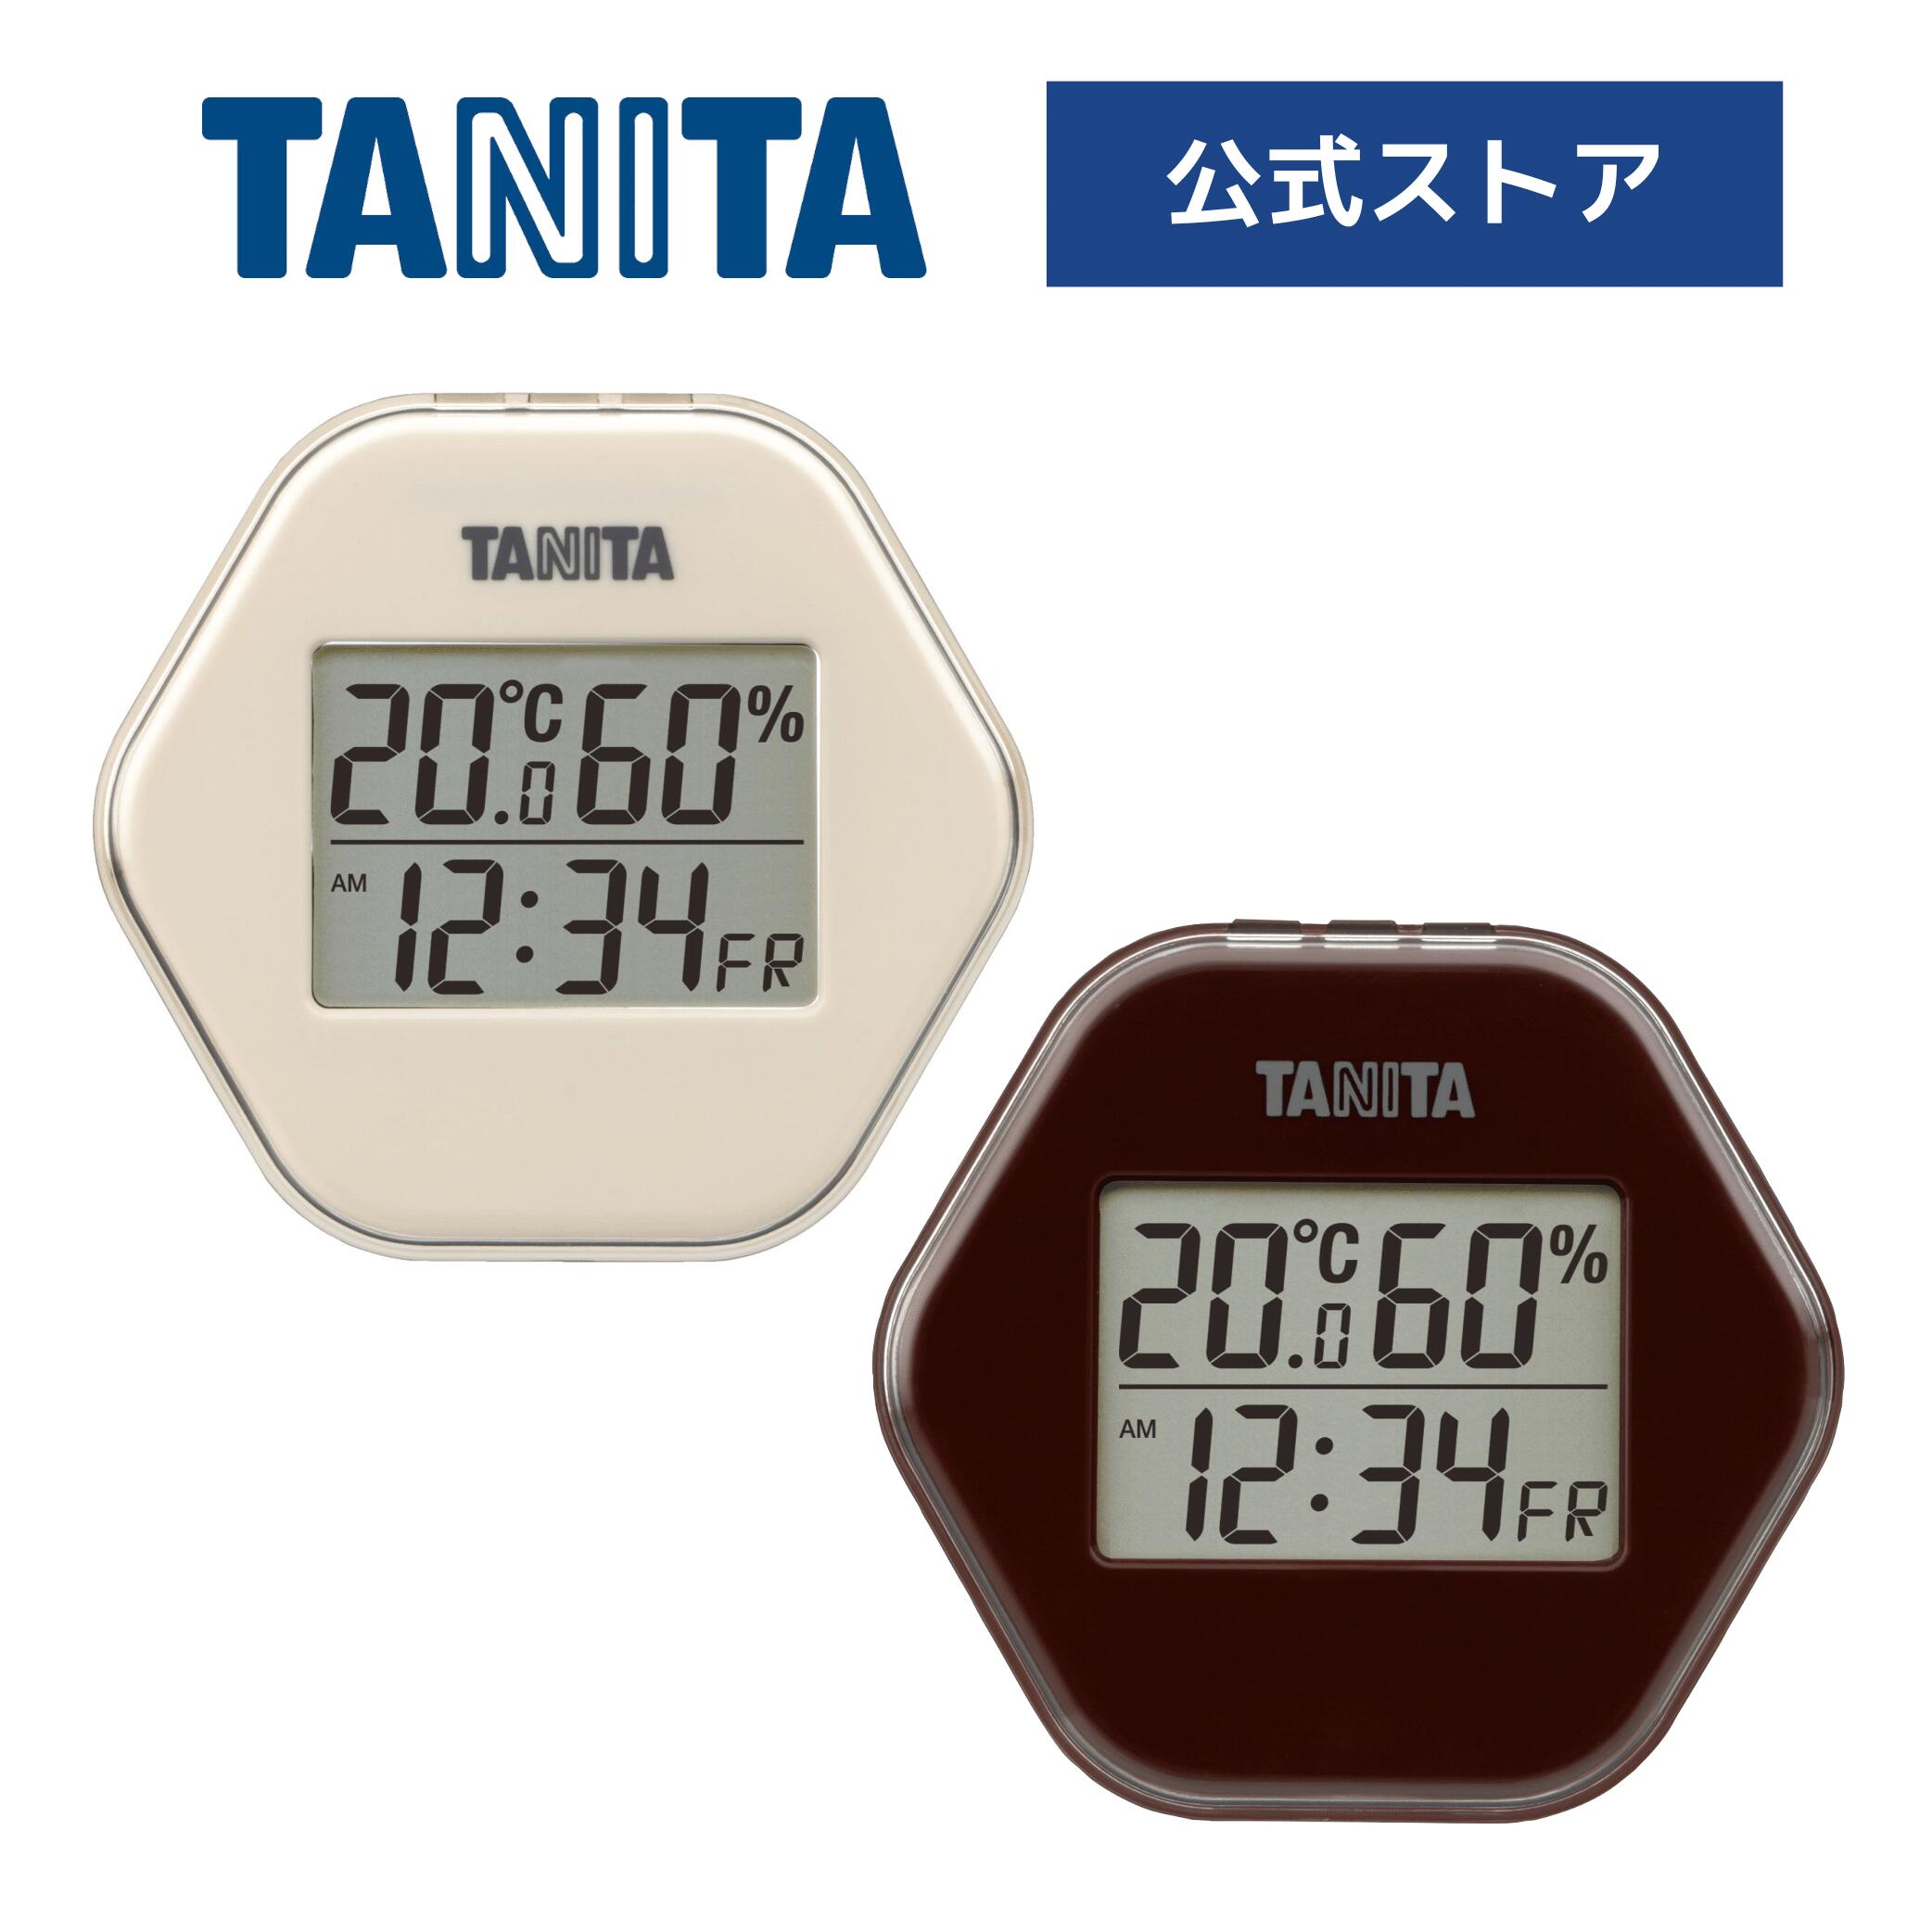 タニタ 温湿度計 時計 デジタル TT-573 温度 湿度 室温 マグネット スタンド 置き型 卓上 シンプル 小型 薄型 見やすい 高精度 メモリー おしゃれ 高級感 カレンダー アイボリー ブラウン TANITA